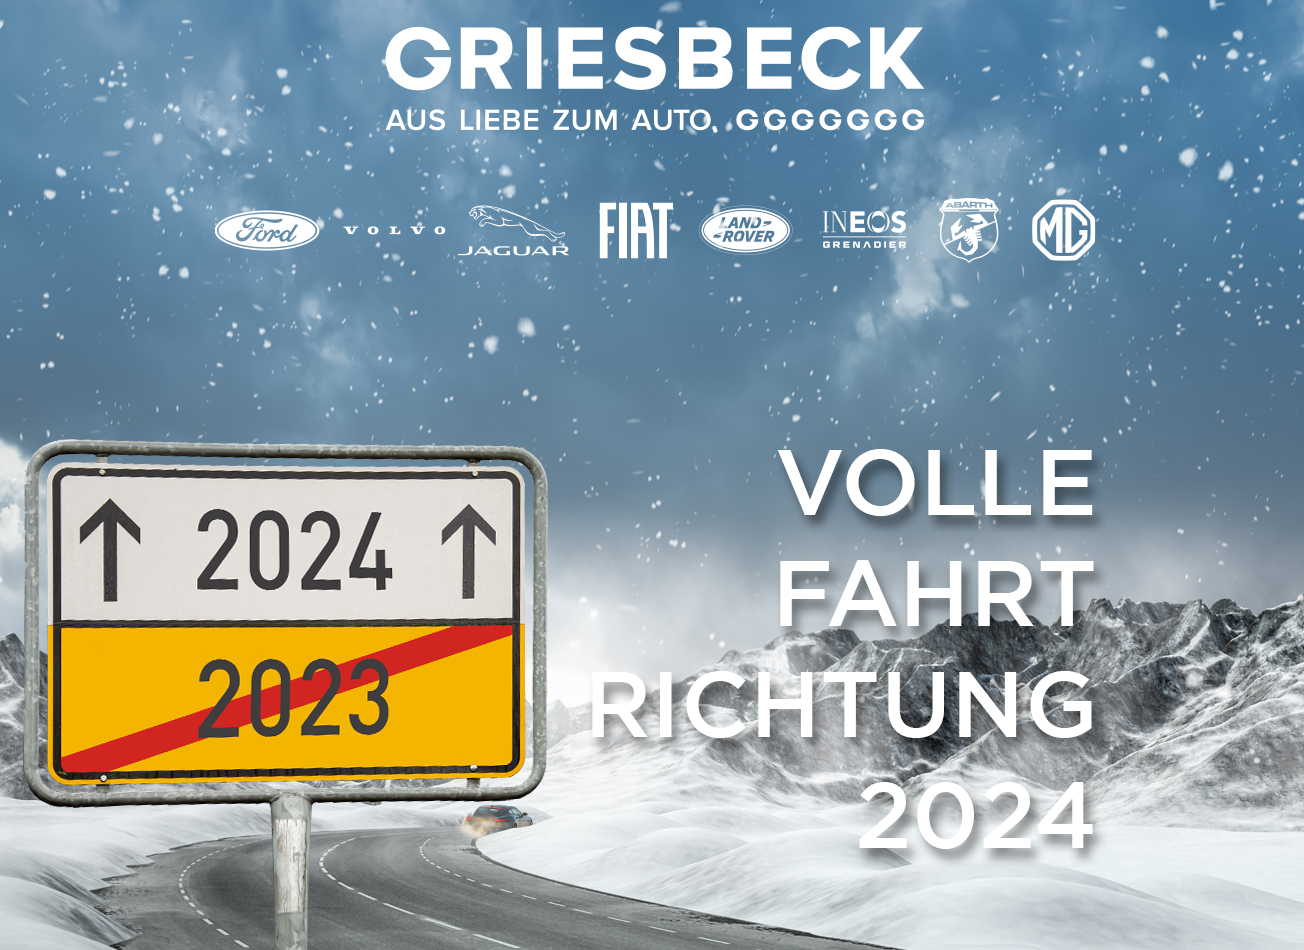 Ignis Zubehör - Autohaus Griesbeck